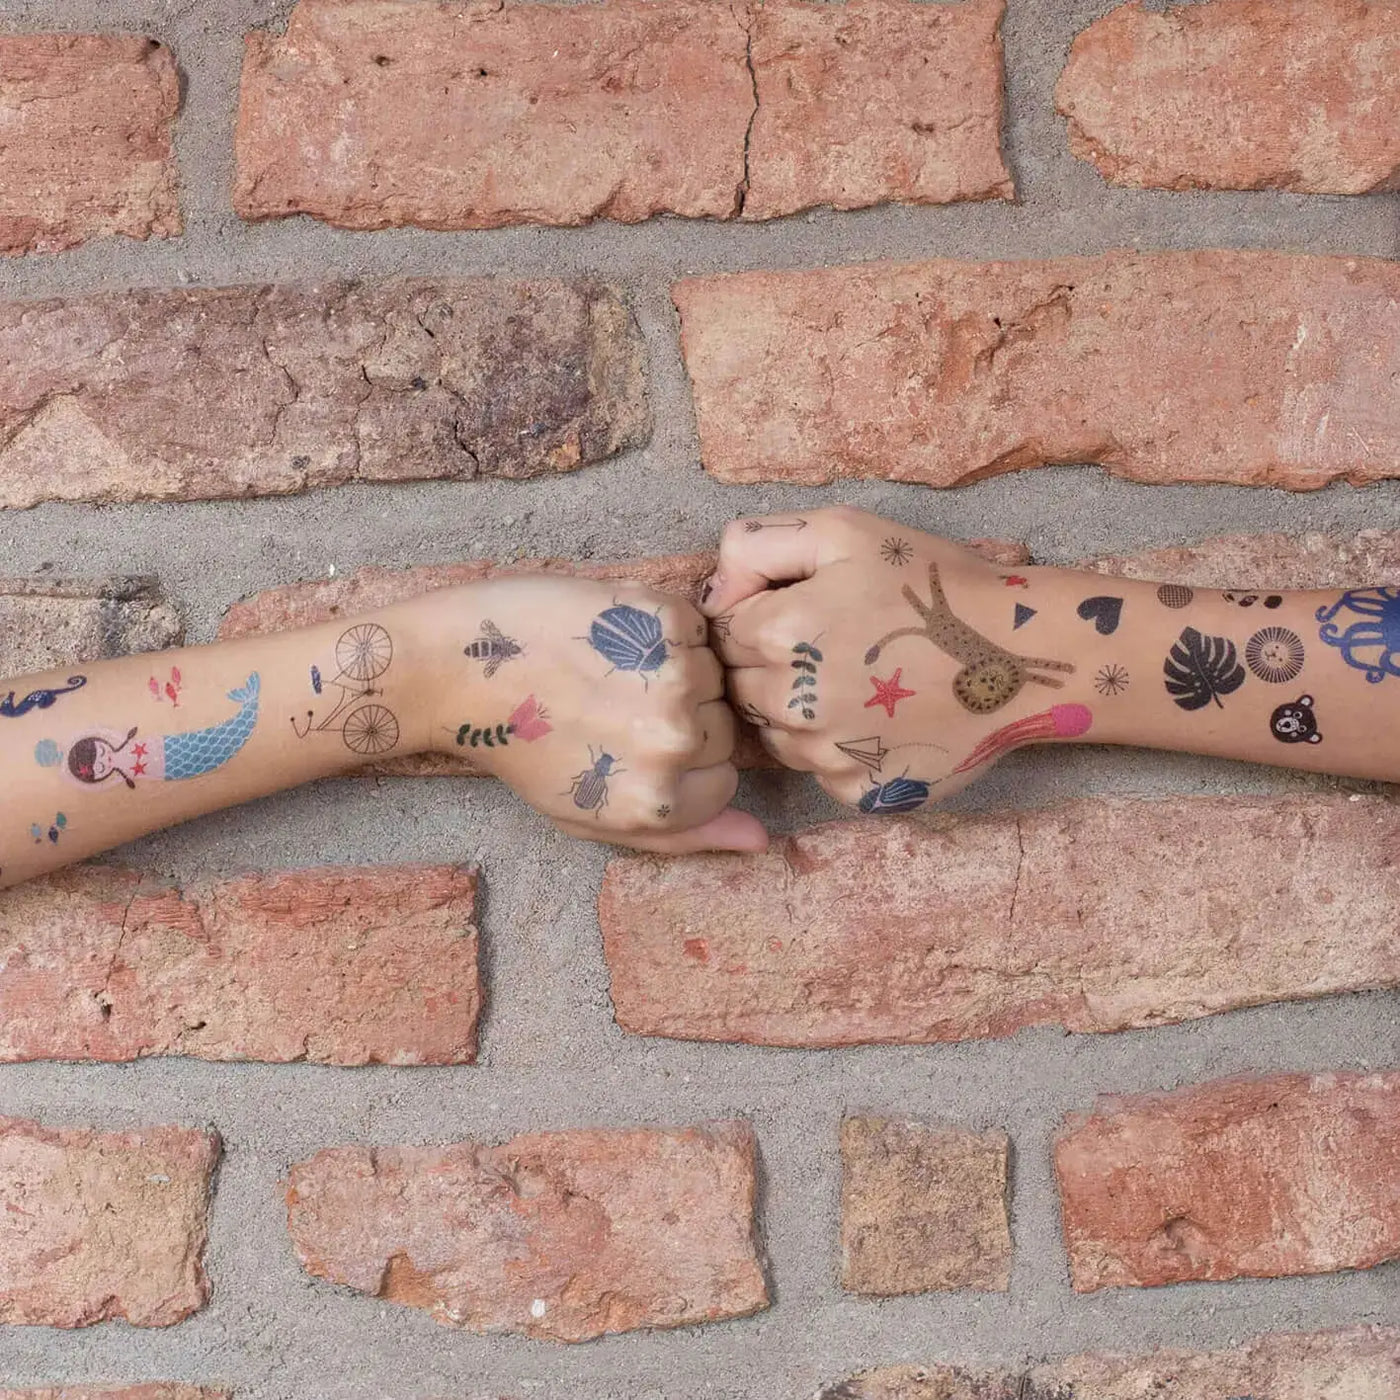 temporäre tattoos tattoo temporäre löwen tattoo herz tattoo klebetattoo tattoos für kinder fake tattoos für die haut